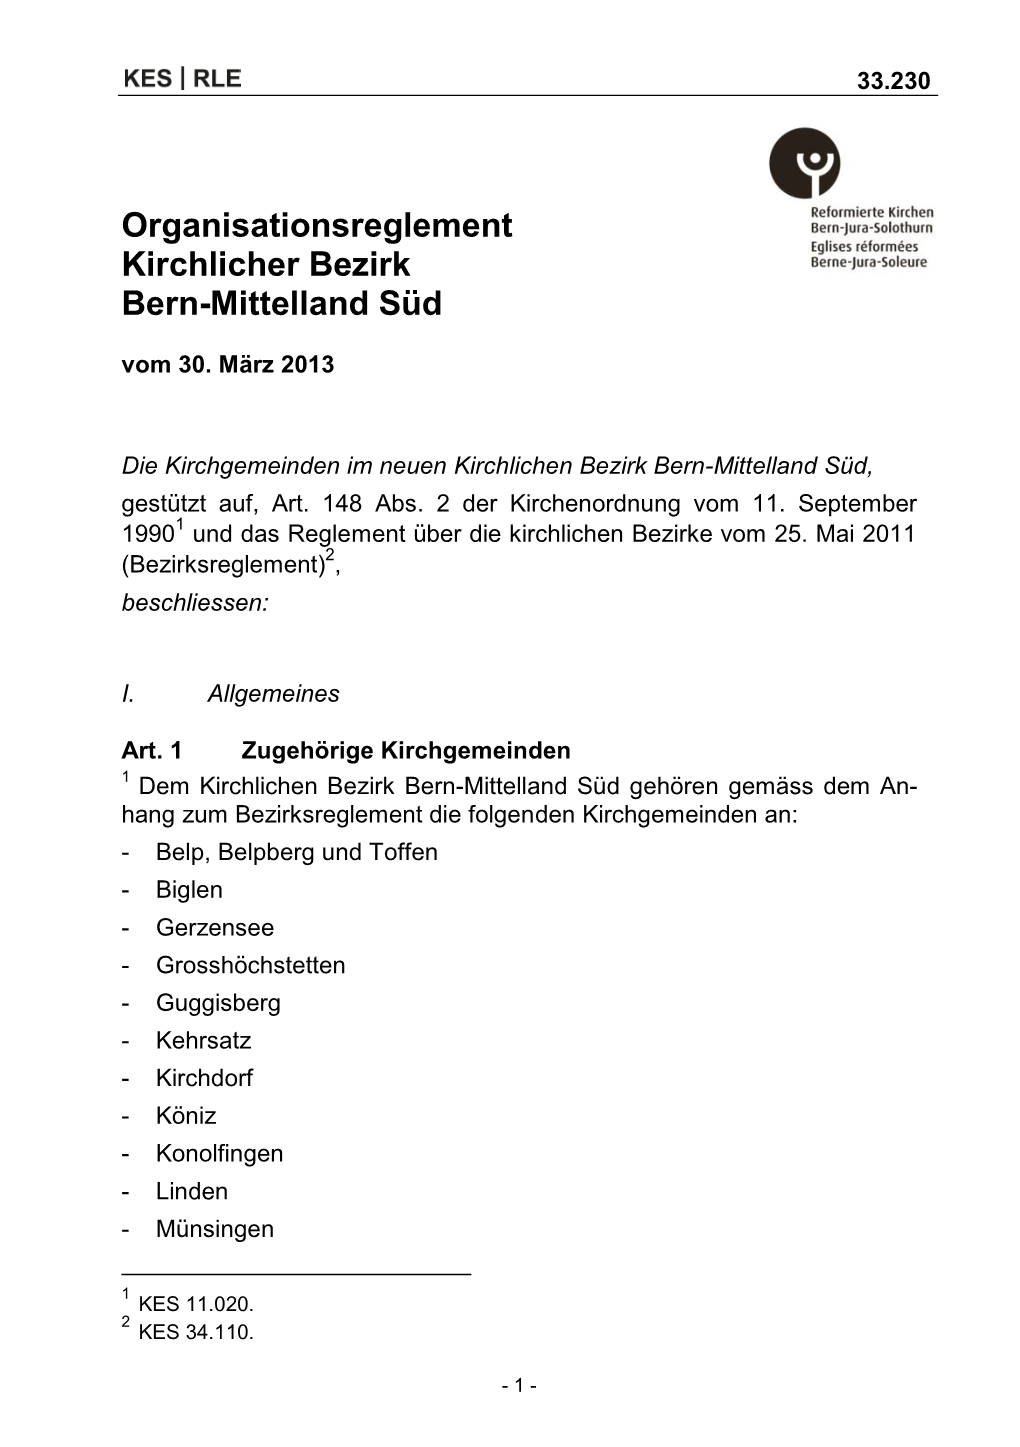 Organisationsreglement Kirchlicher Bezirk Bern-Mittelland Süd Vom 30